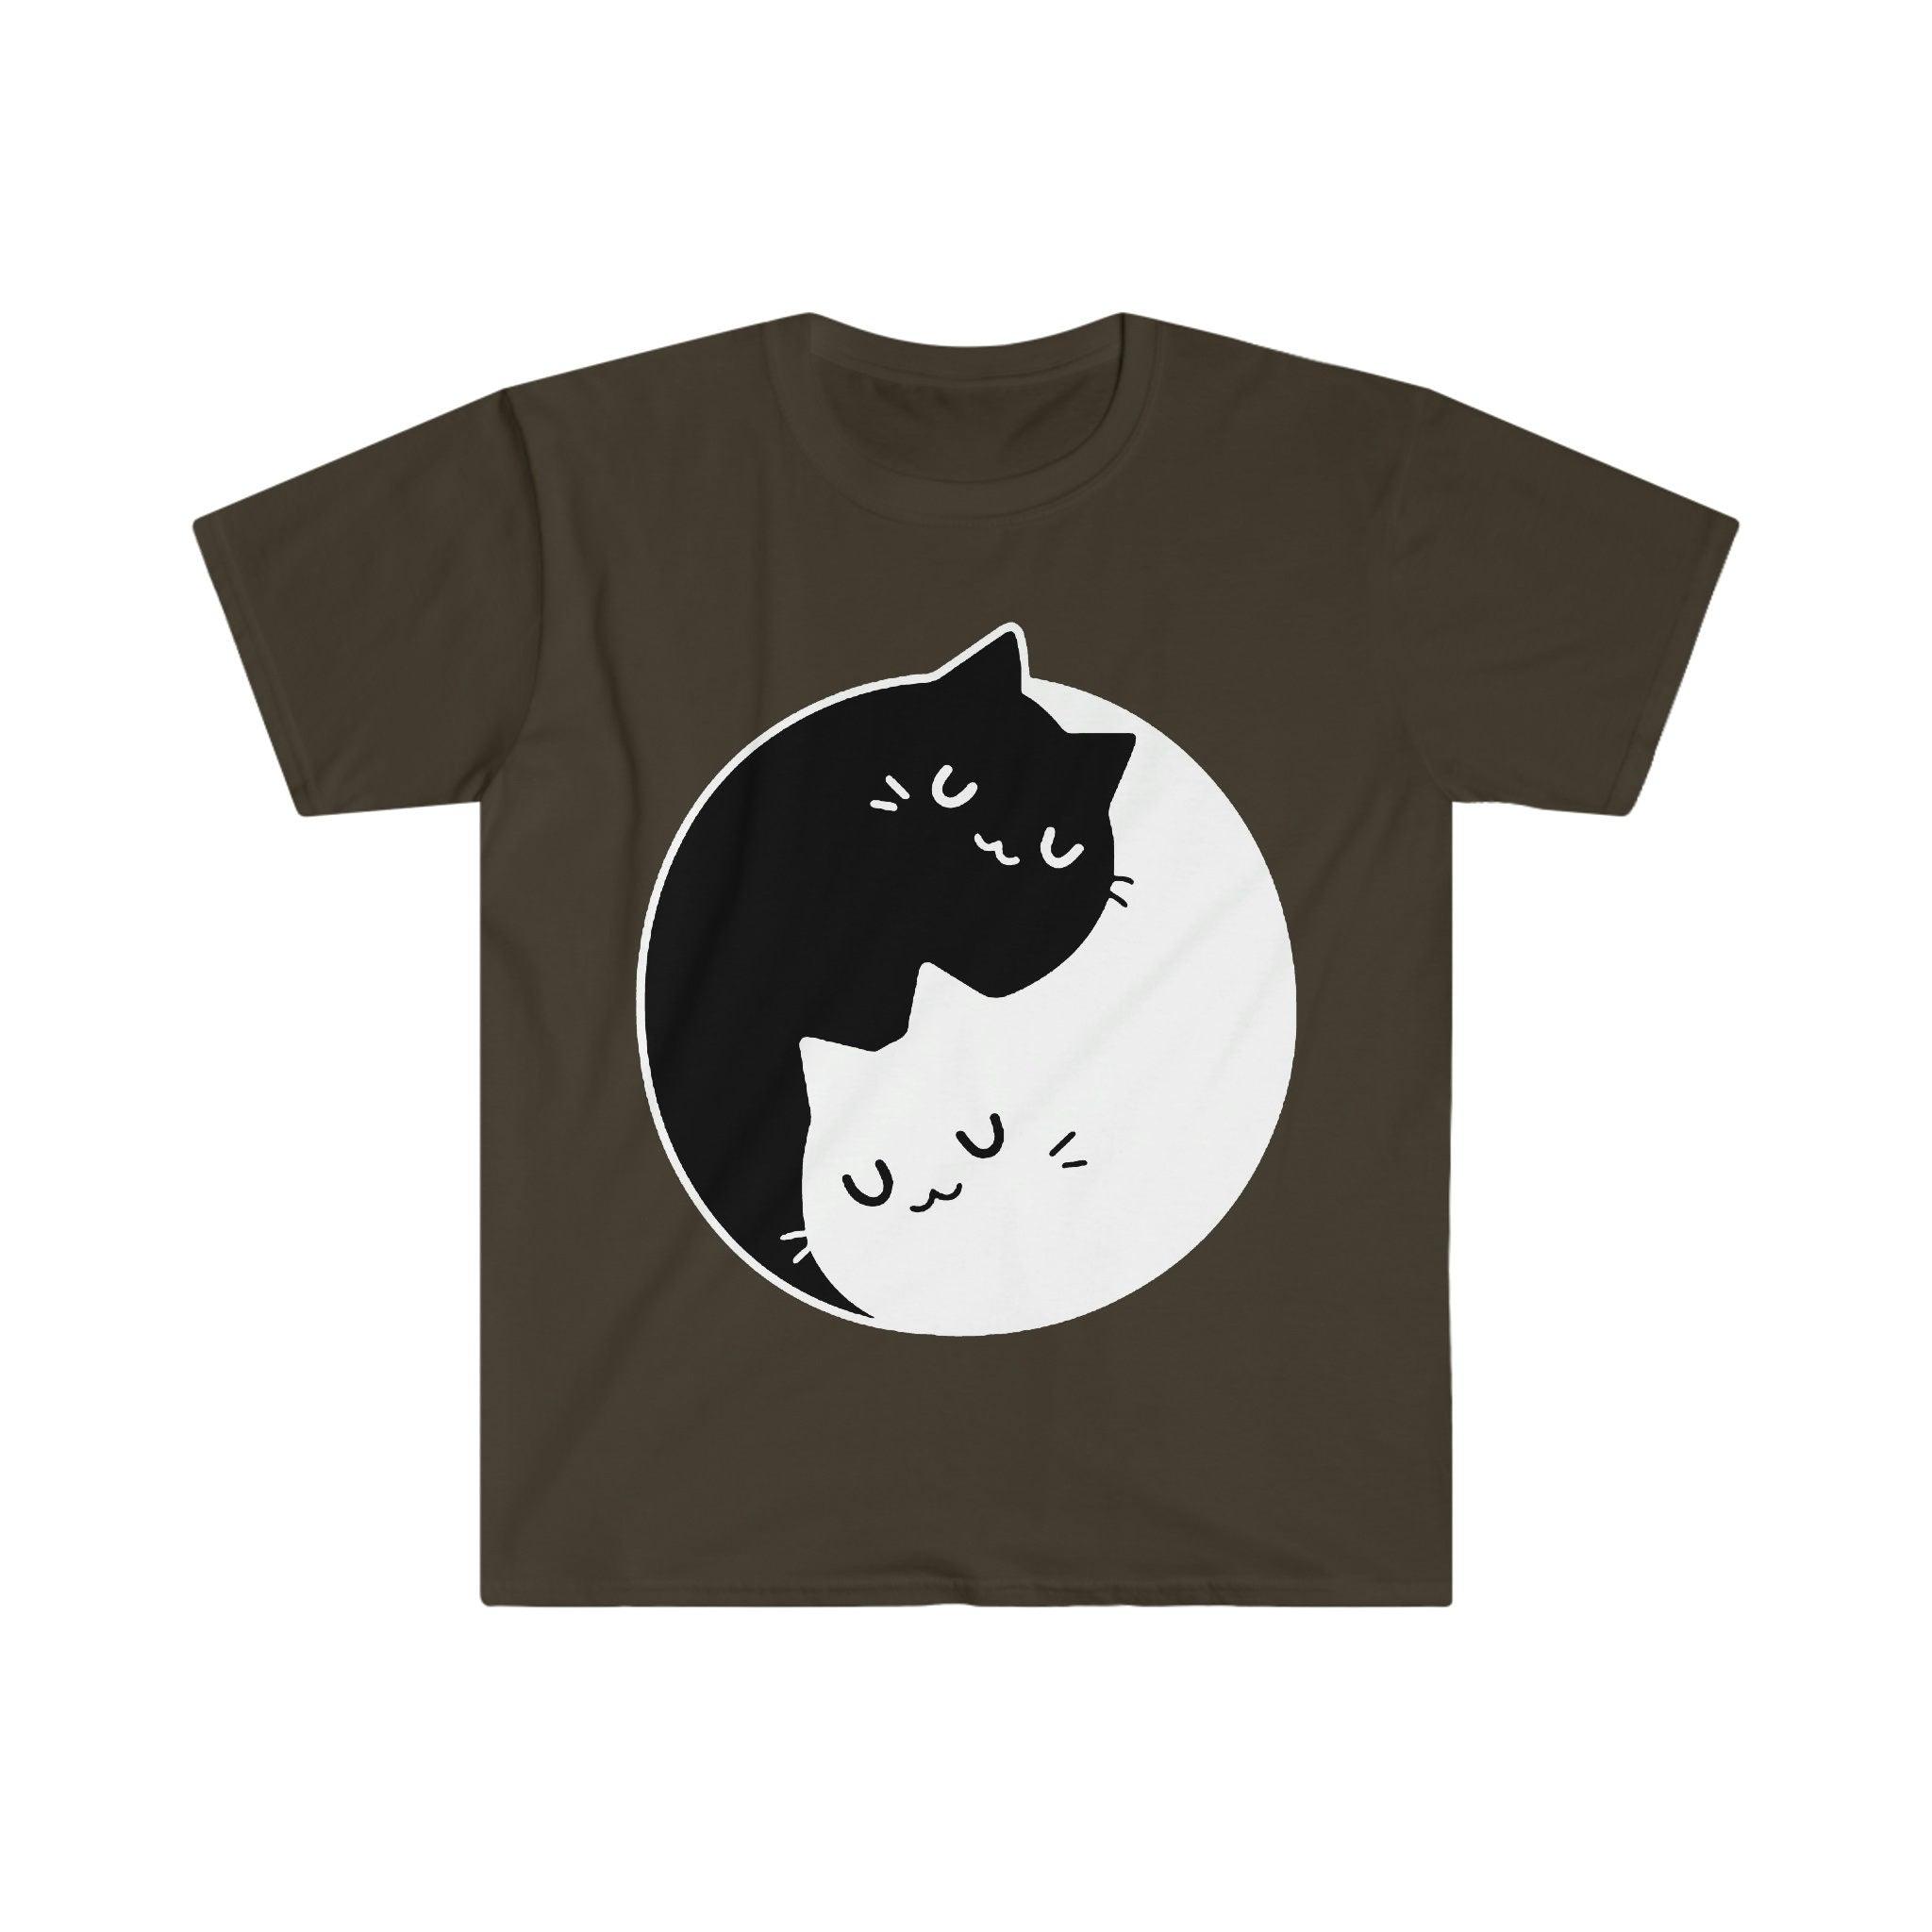 T-shirt dos gatos de Yin Yang, dualidade de Yin Yang || Gatos Yin Yang || Presente perfeito - S M L Xl - Senhoras, Homens Unissex || Ideias para presentes de casal melhor amigo, mãe gato - plusminusco.com